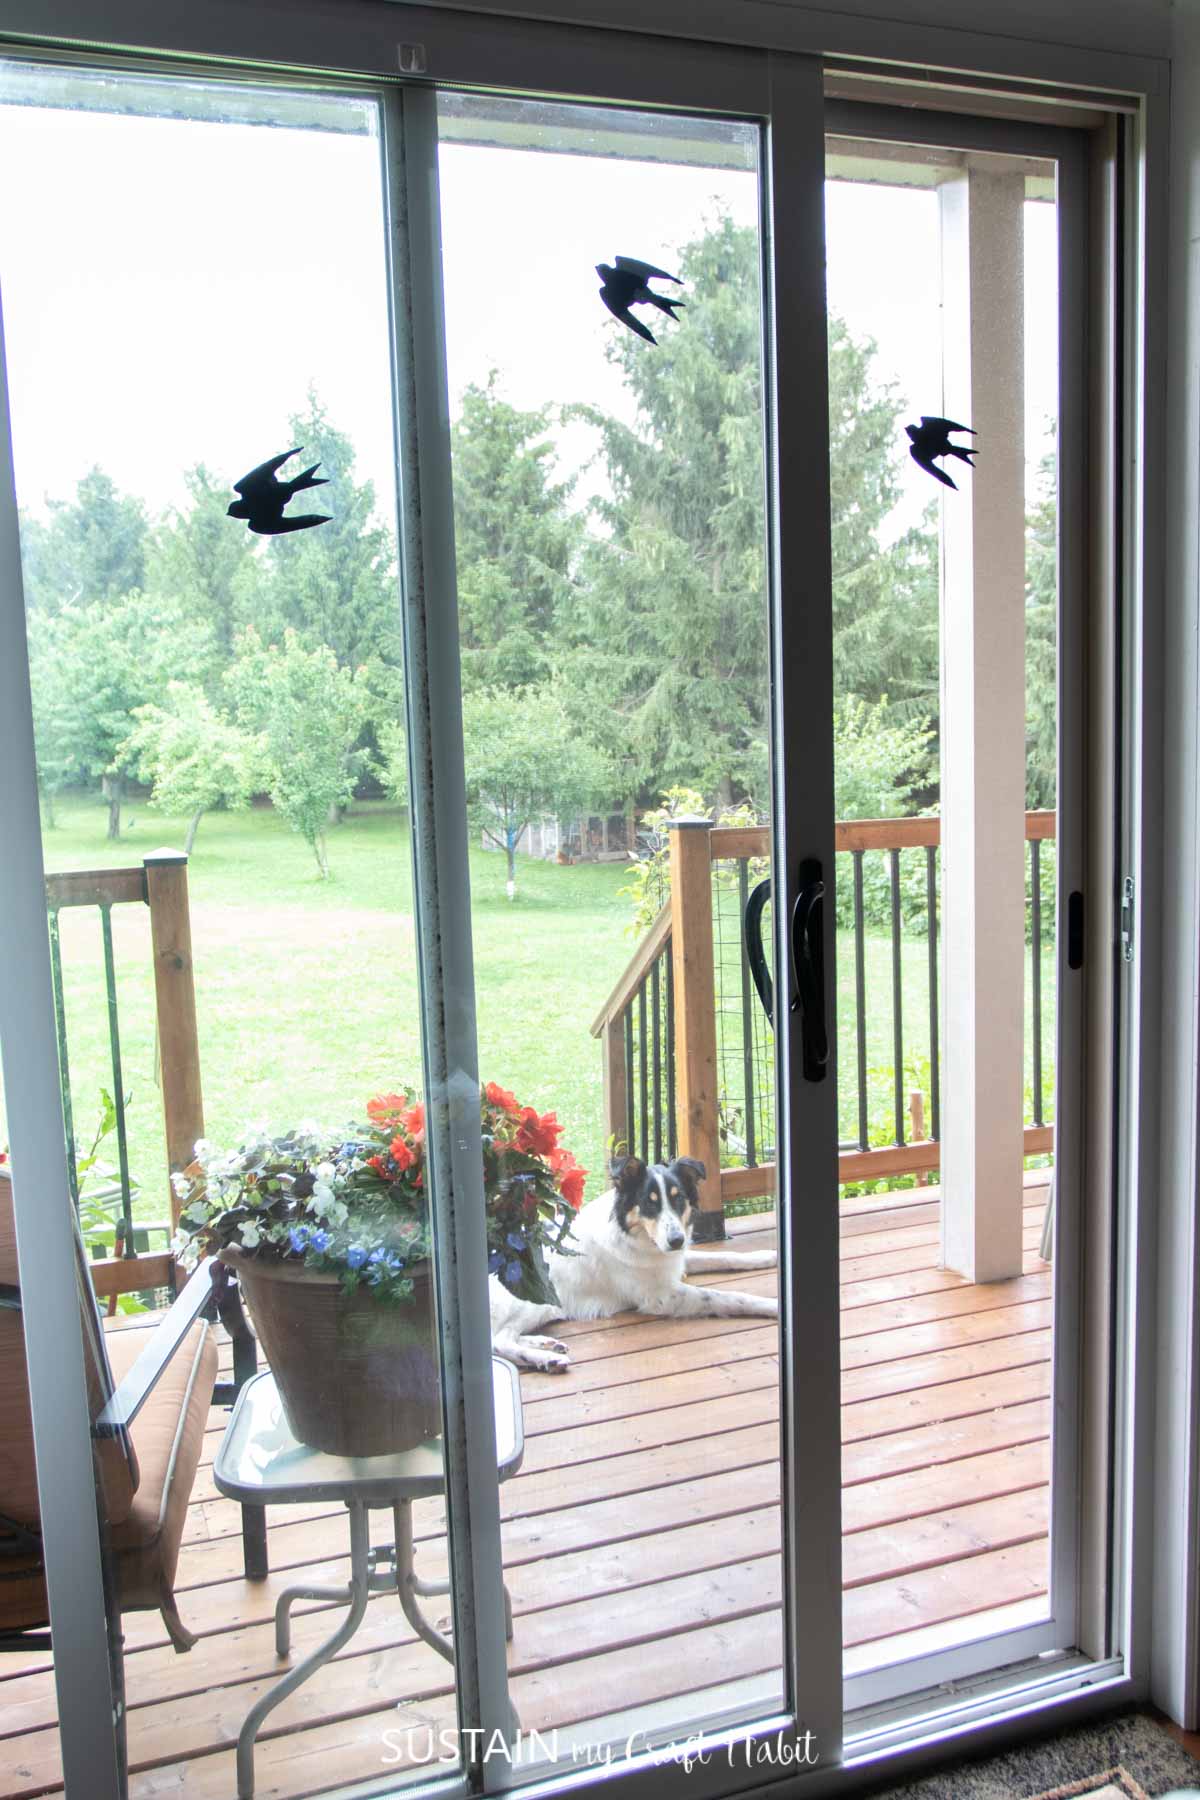 screen door whowing bird decals to keep birds from flying into windows